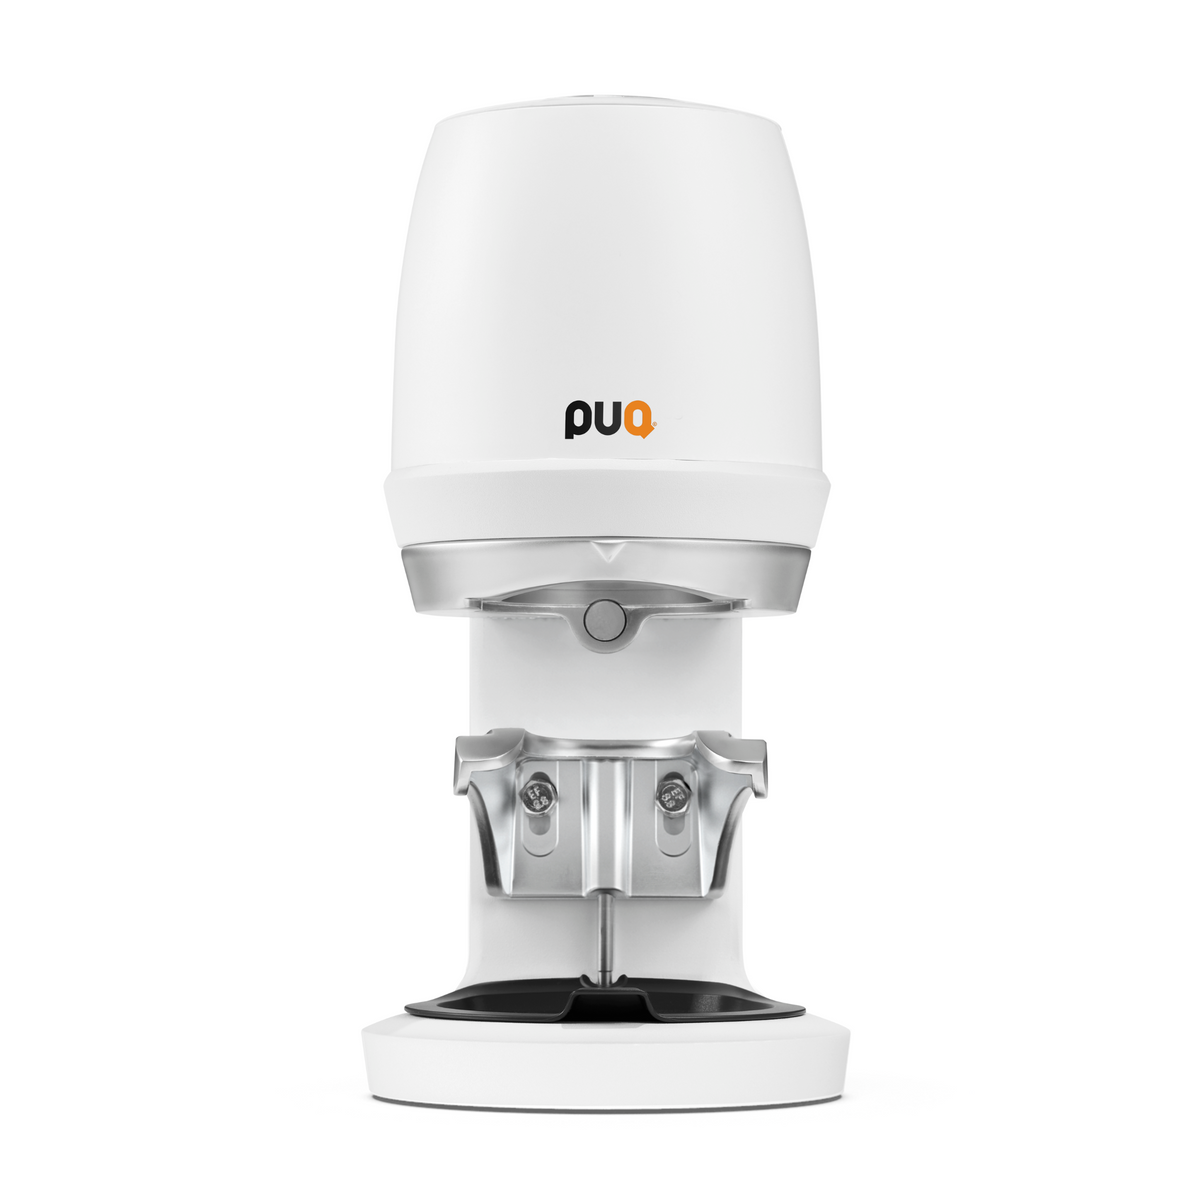 Puqpress Gen 5 Q2 - 自动咖啡压粉机